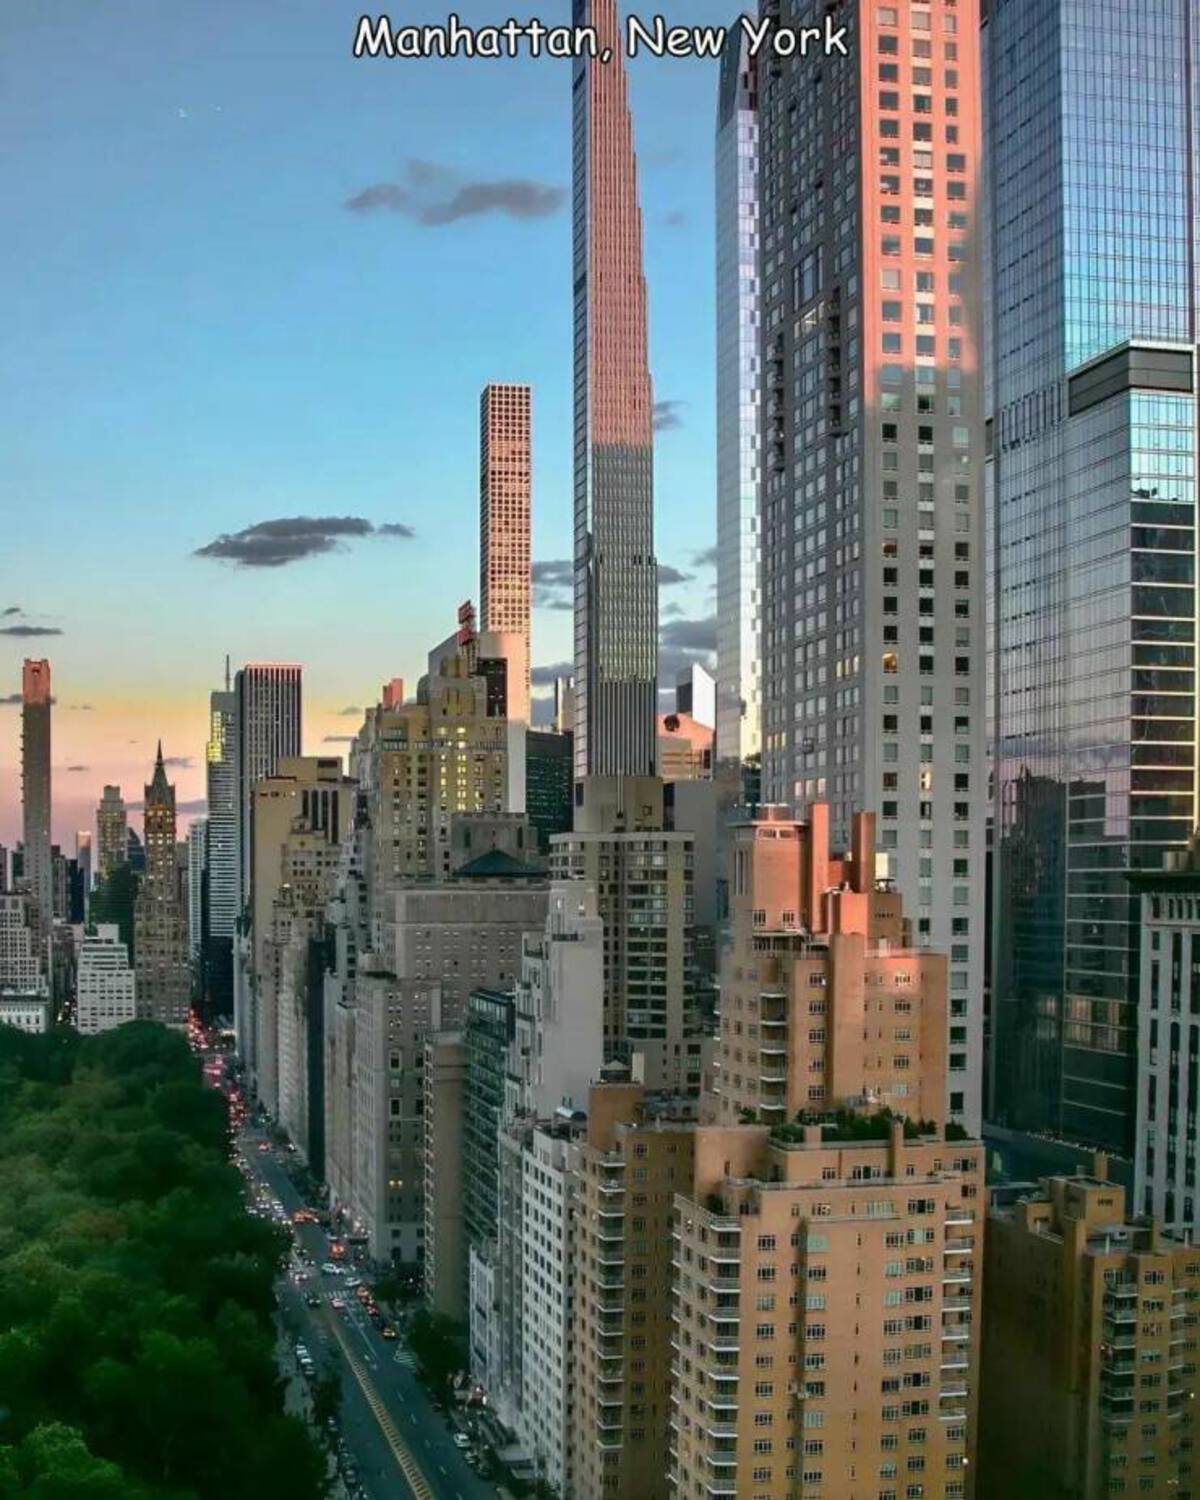 tower block - Manhattan, New York a. is